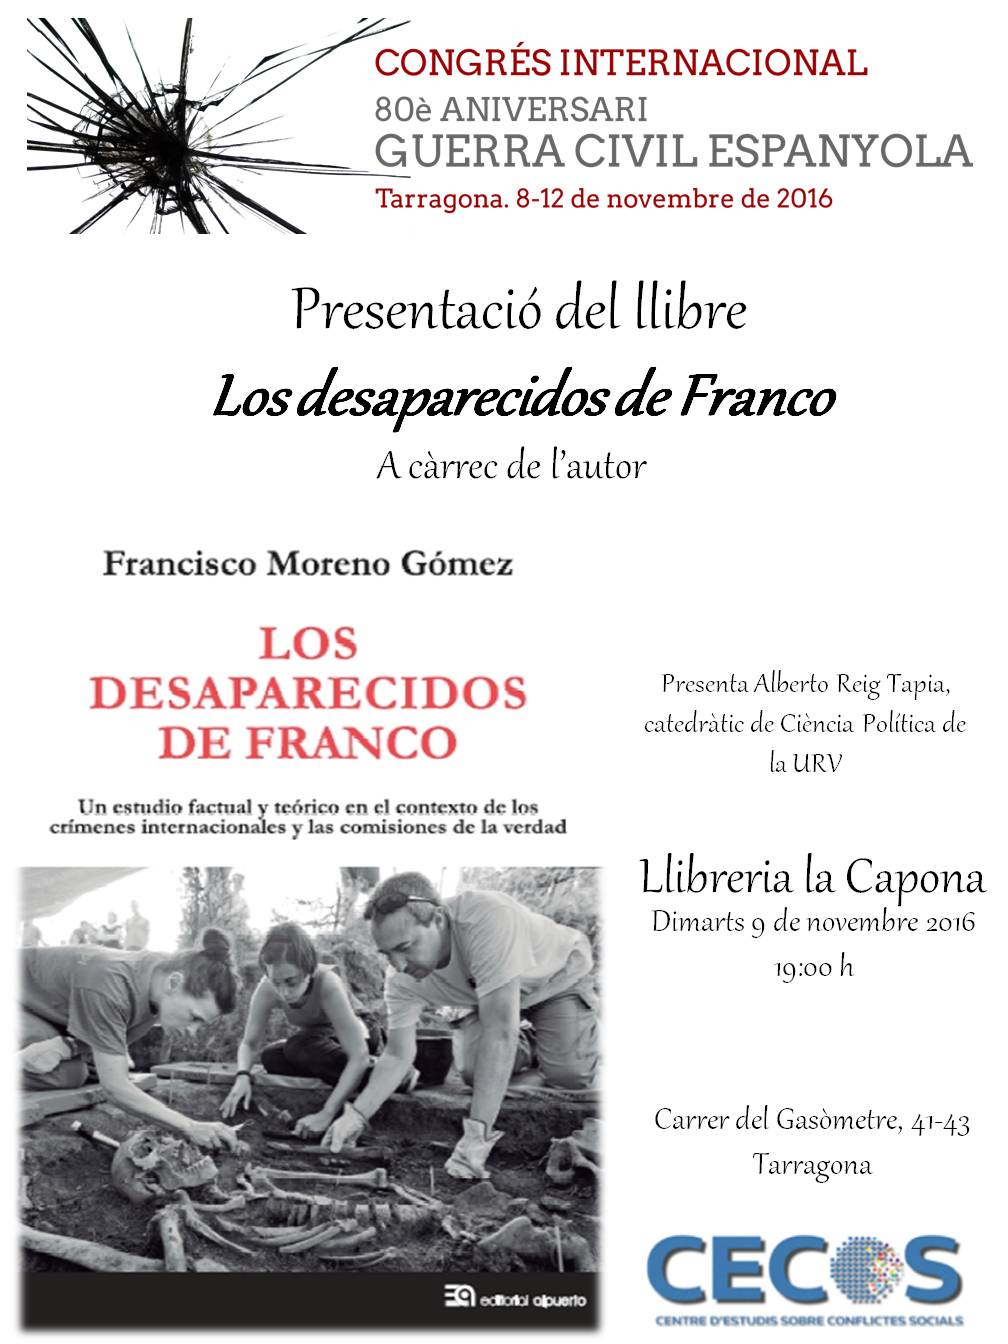 Presentació del llibre Los desaparecidos de Franco